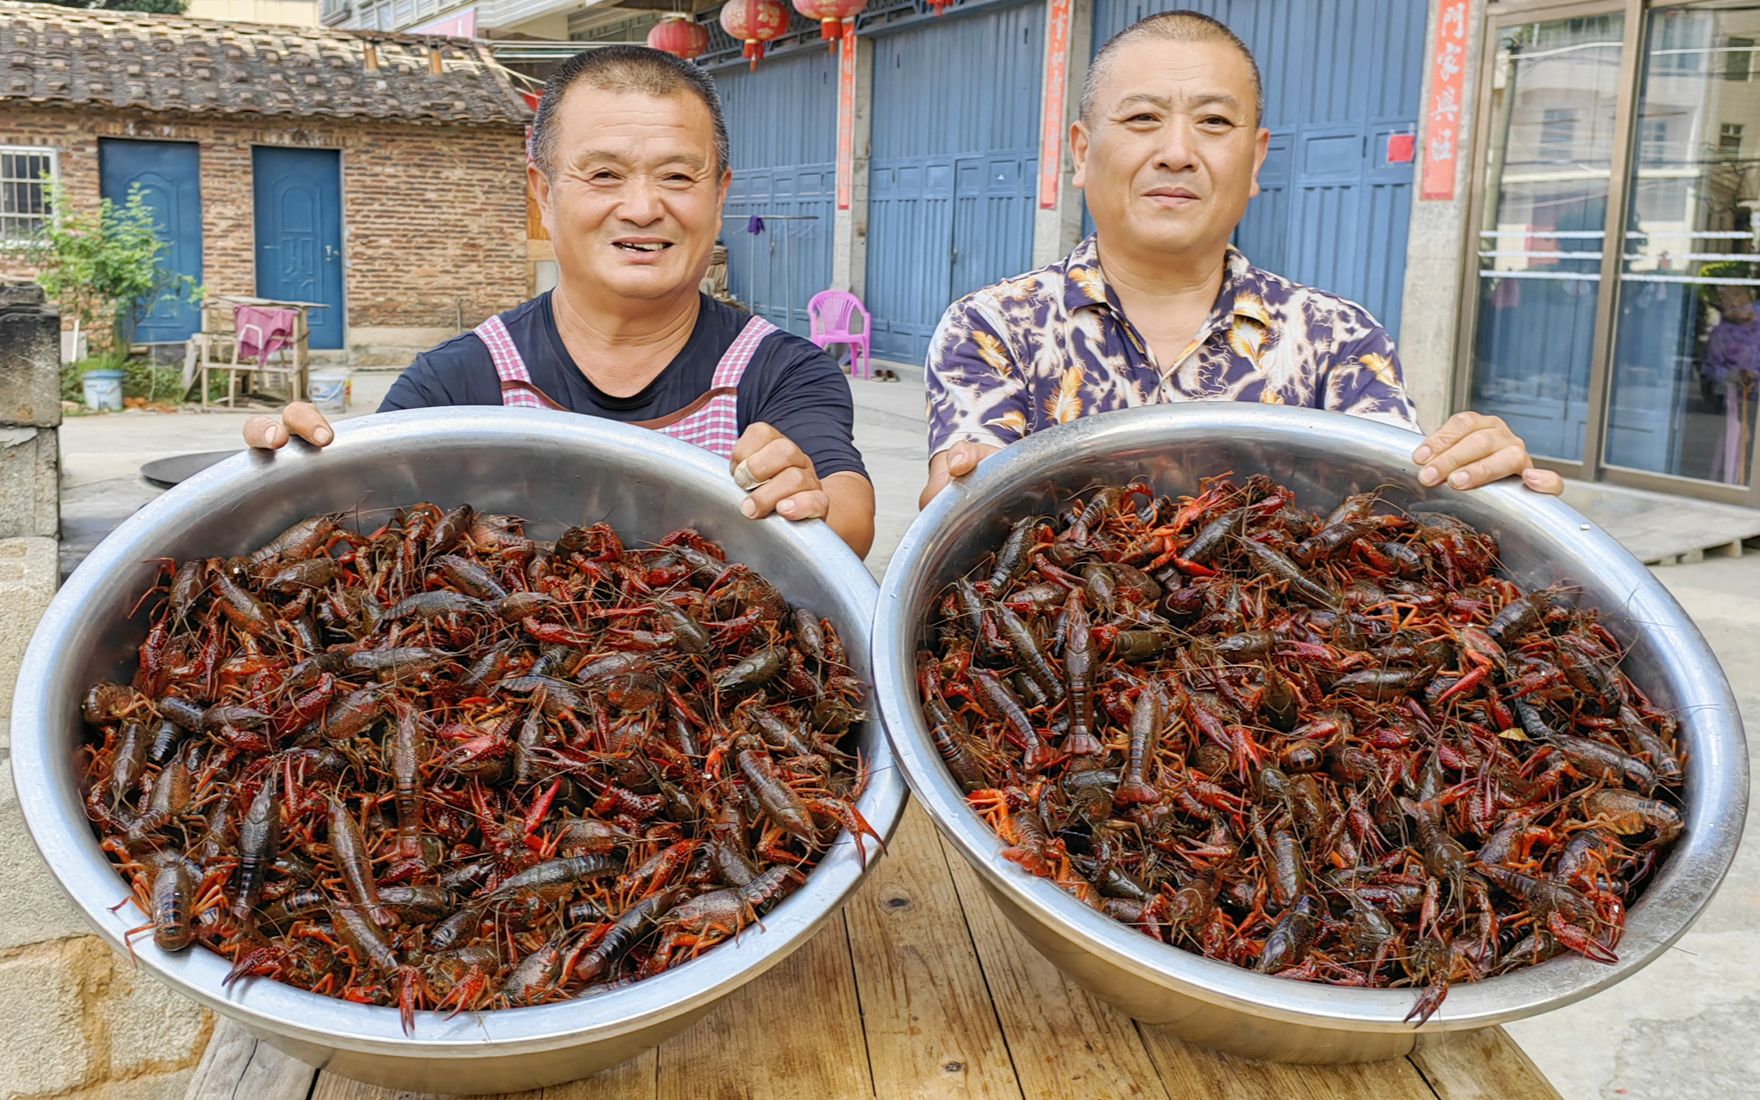 吃小龙虾喽，750元买50斤小龙虾，煮满满2大锅，25人小龙虾当饭吃